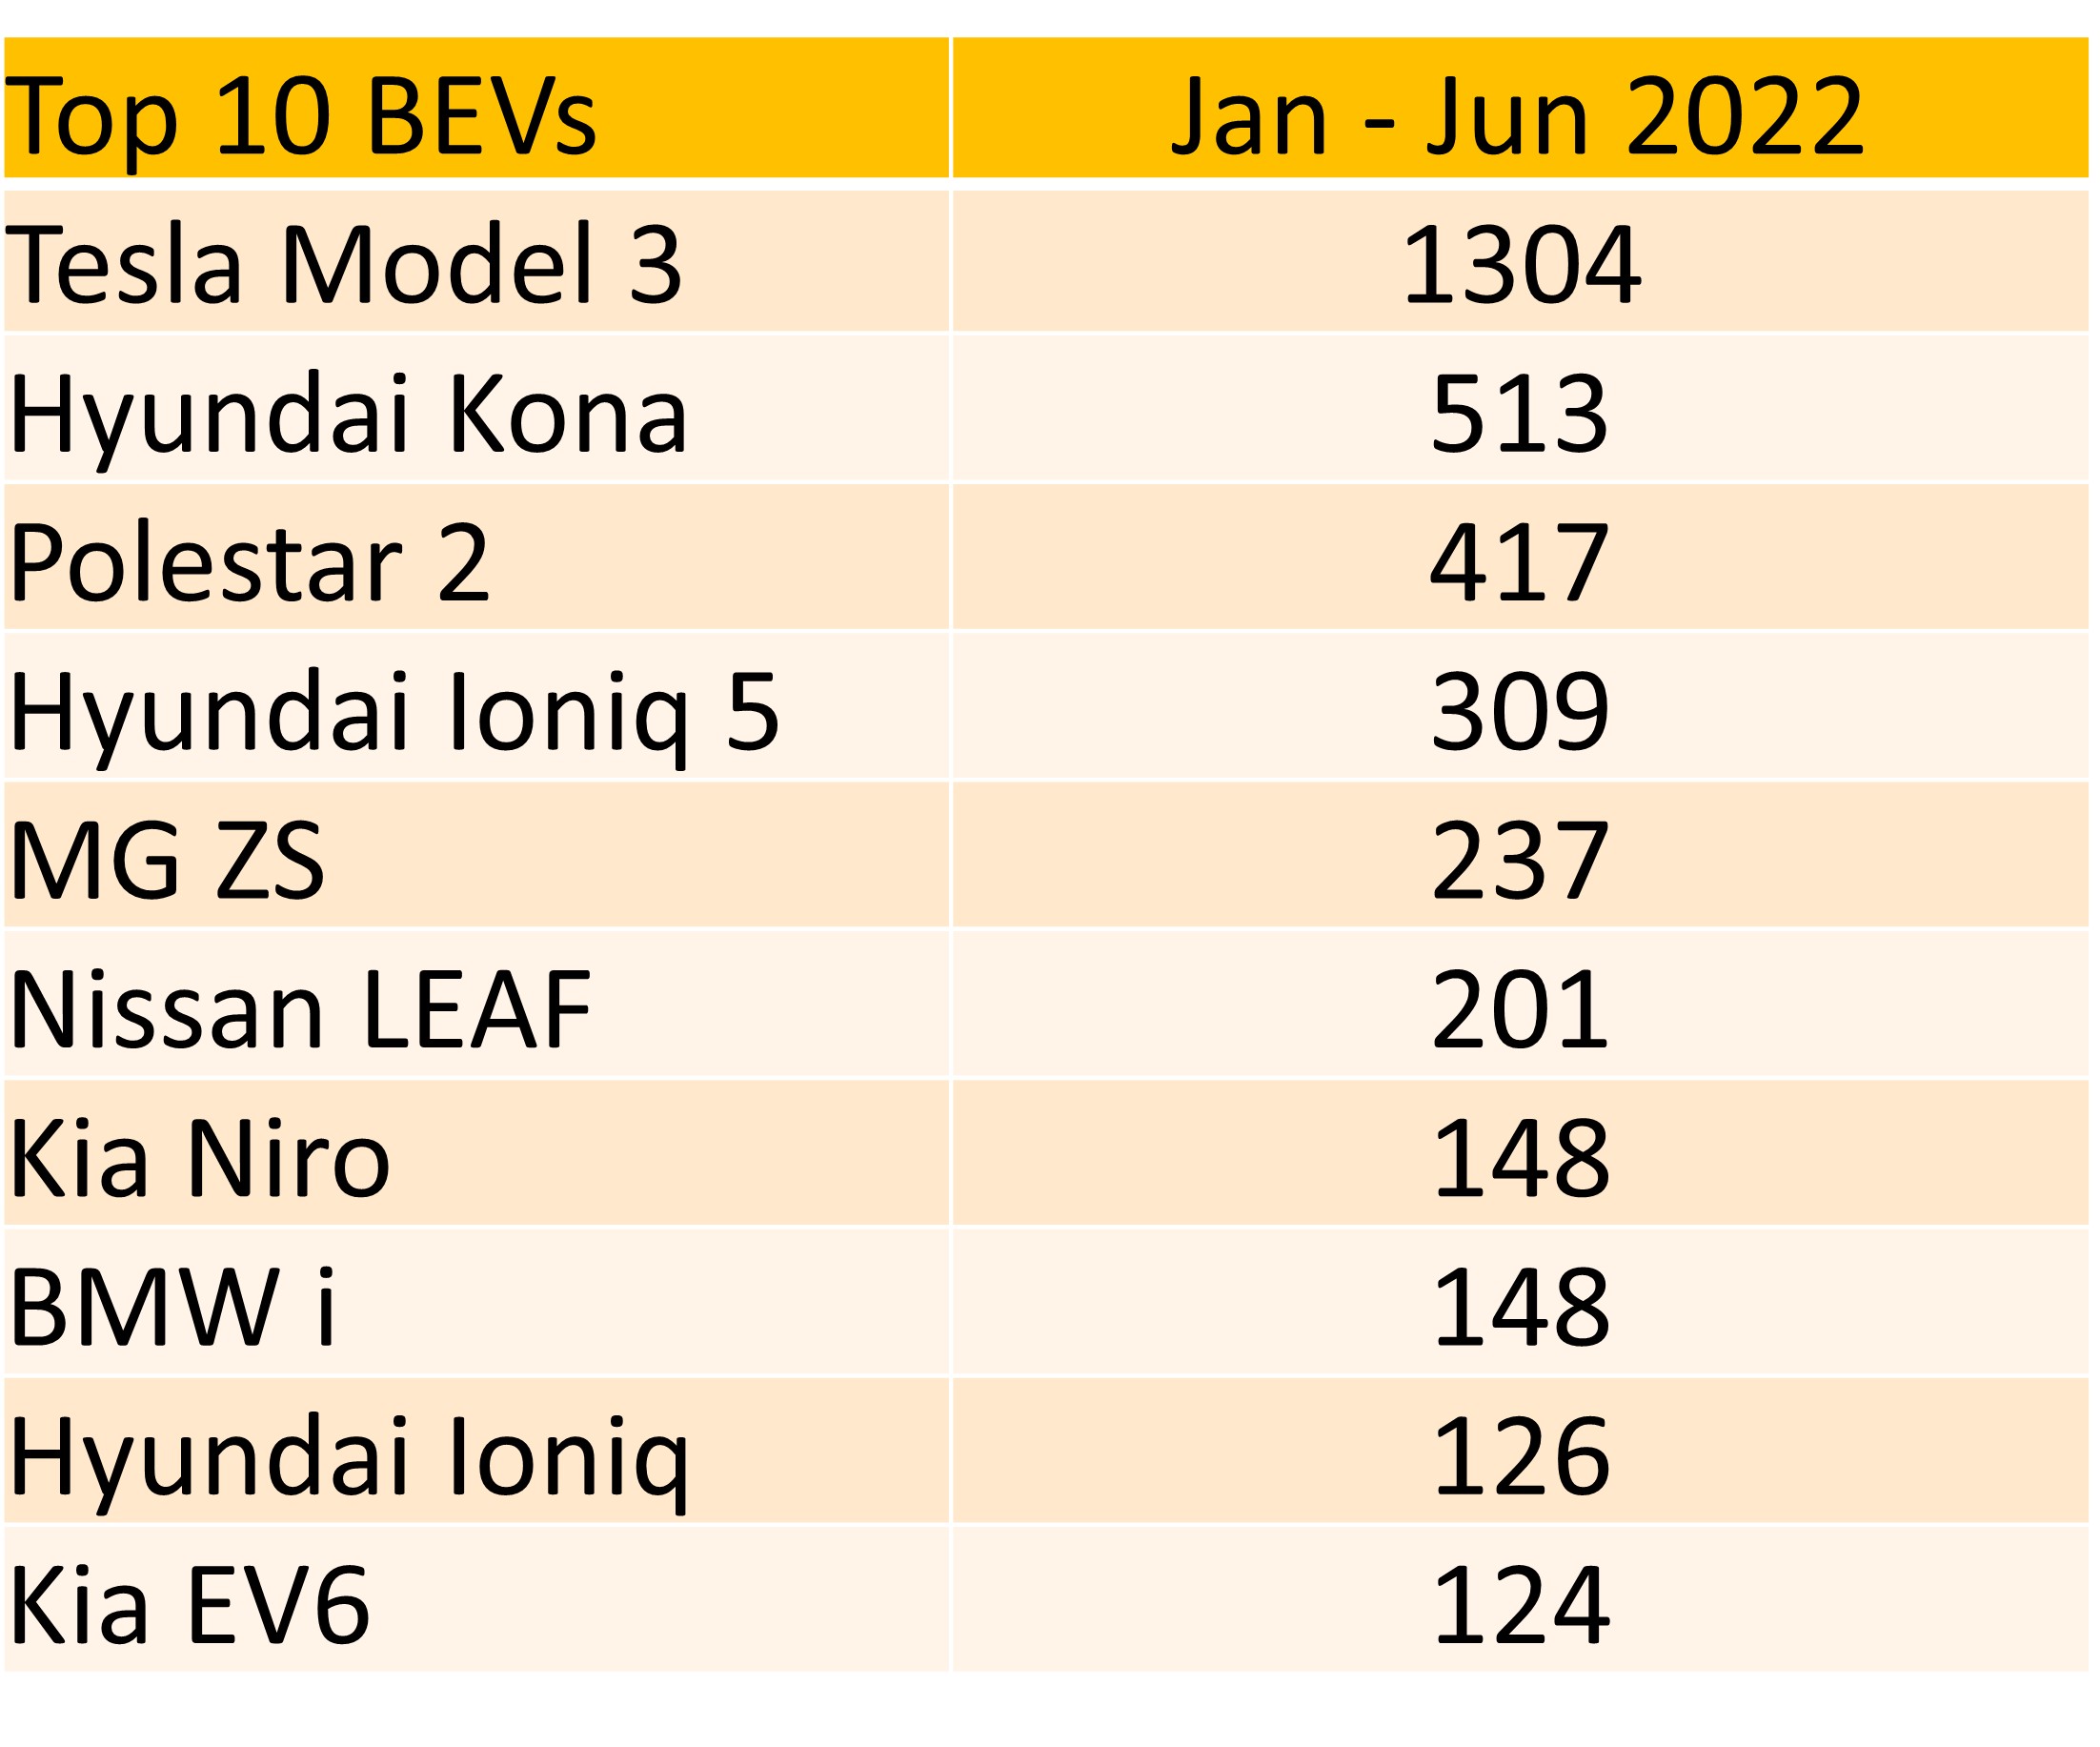 Top 10 BEVs 2022